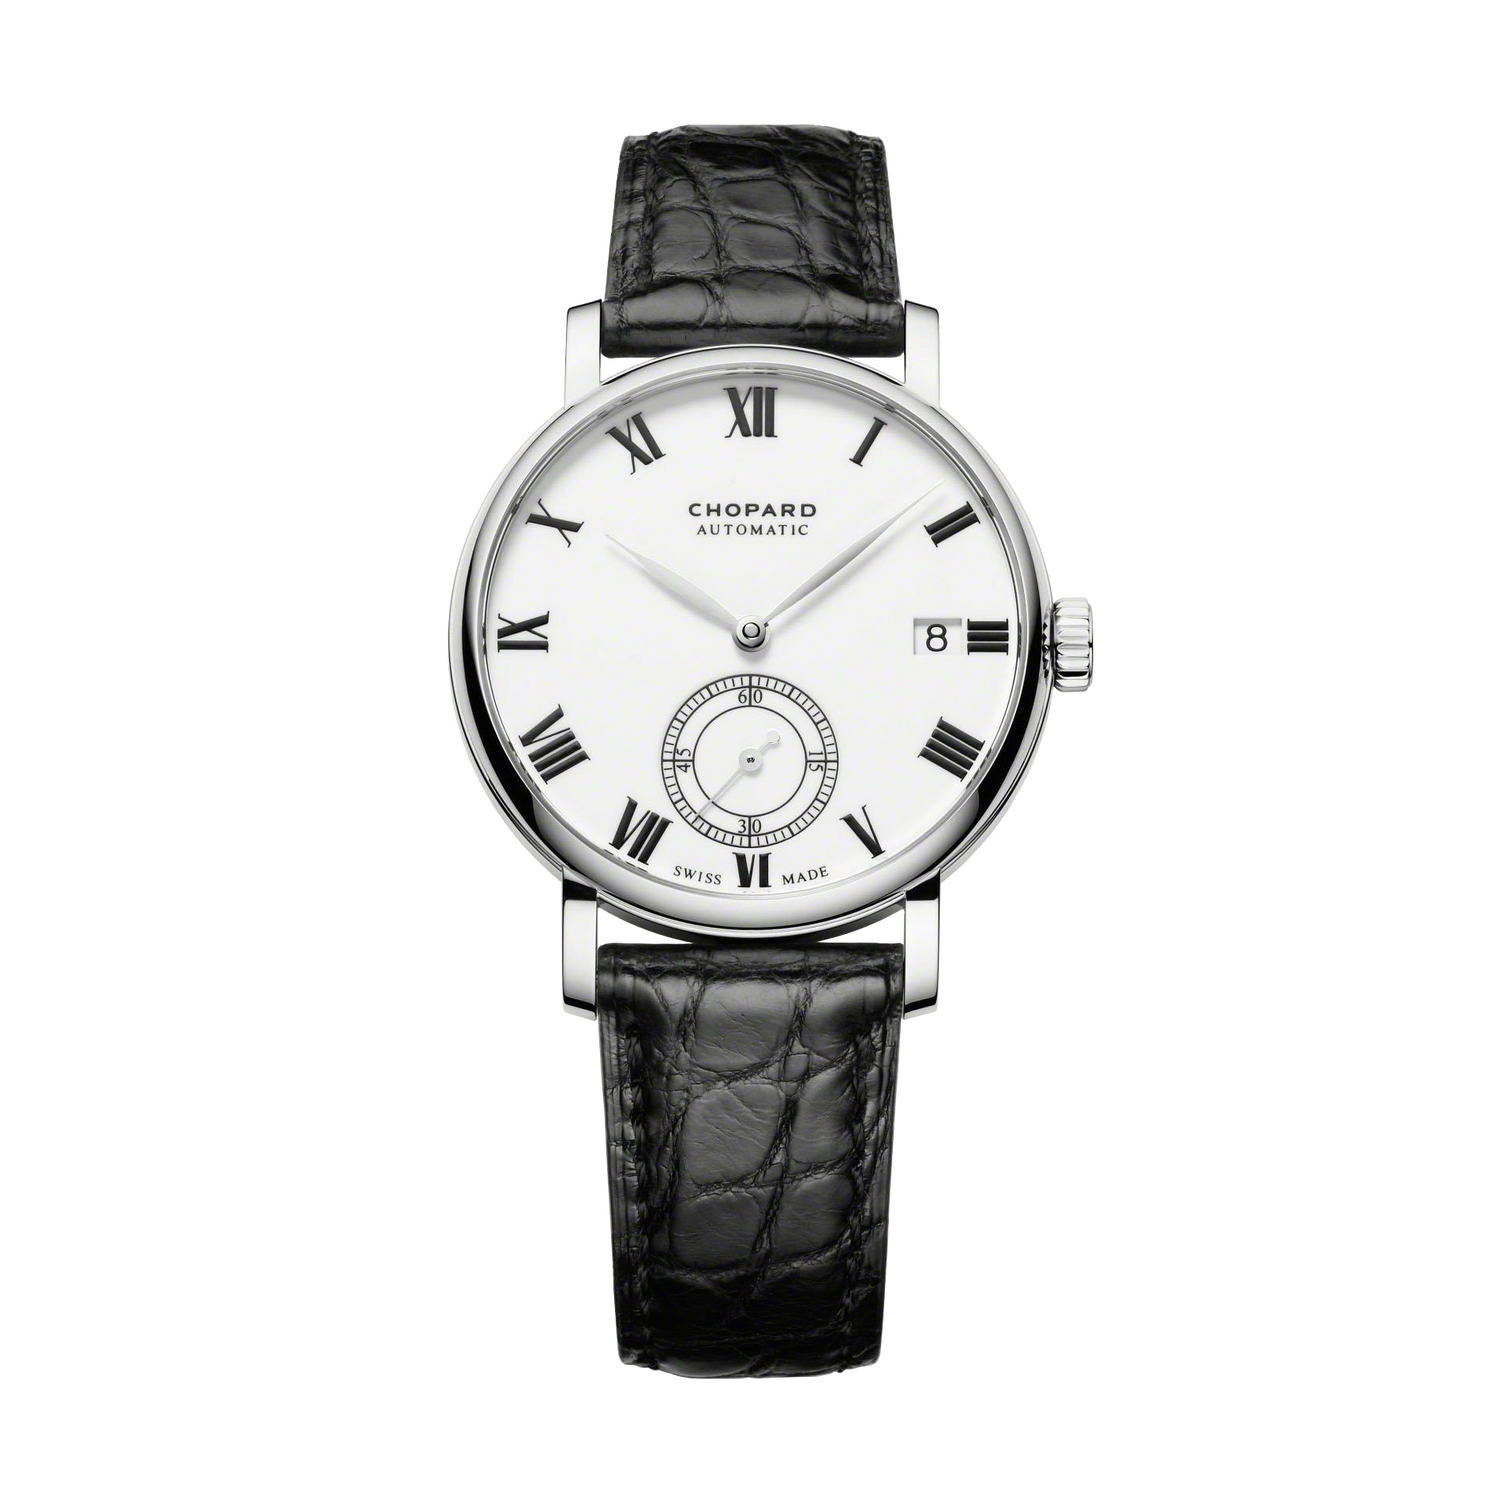 CHOPARD Classic Manufacture 18-carat White Gold Mens Watch 161289-1001